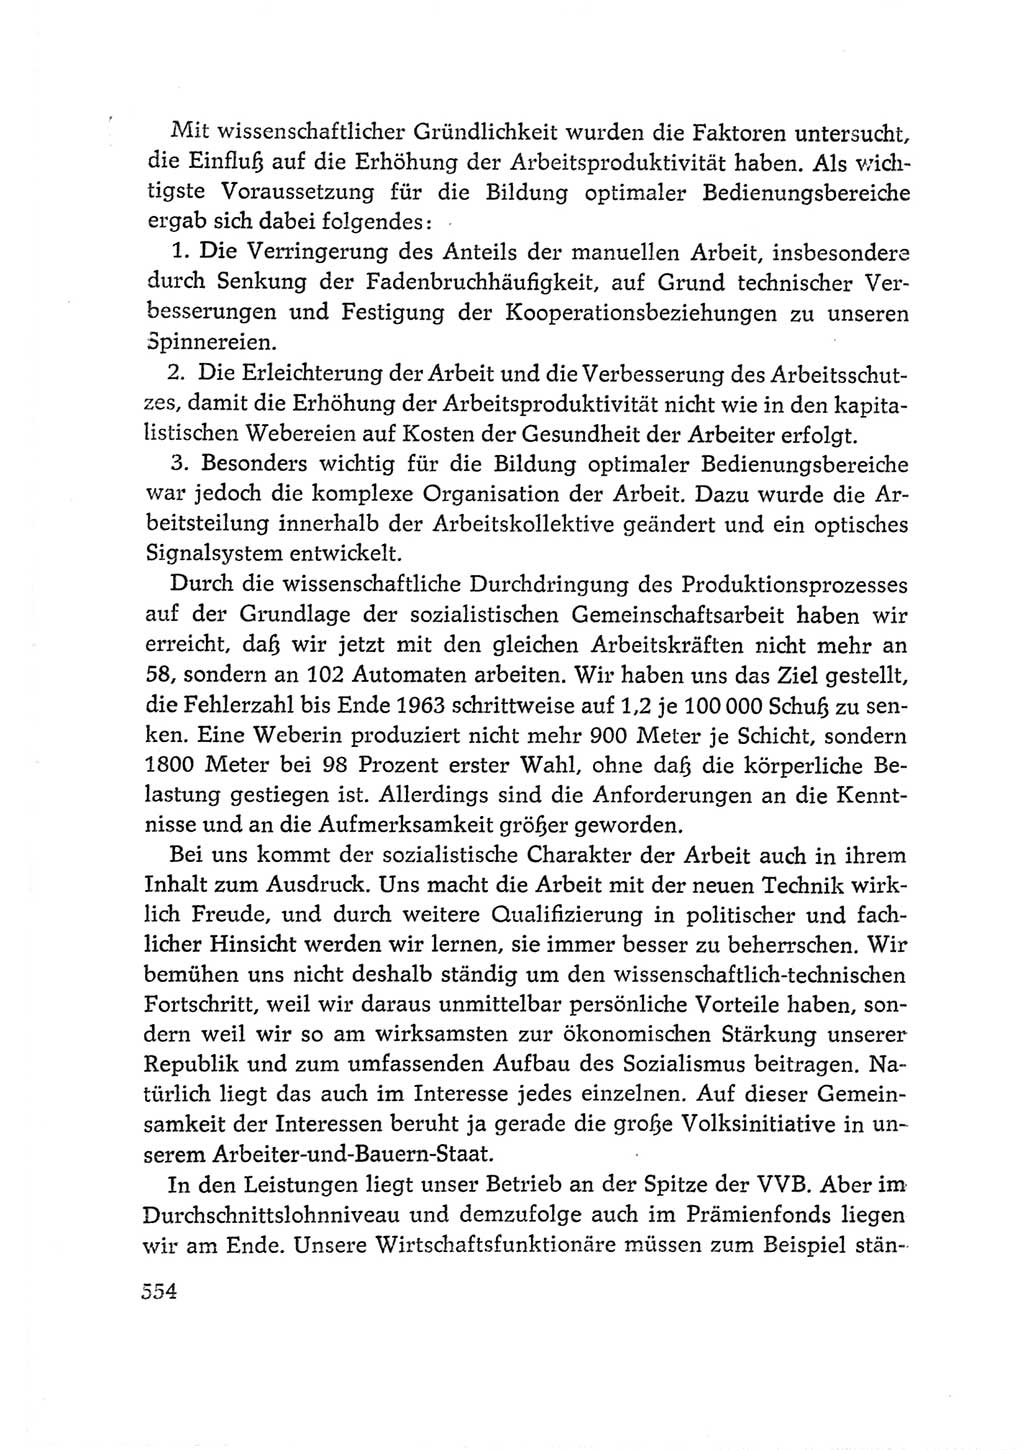 Protokoll der Verhandlungen des Ⅵ. Parteitages der Sozialistischen Einheitspartei Deutschlands (SED) [Deutsche Demokratische Republik (DDR)] 1963, Band Ⅰ, Seite 554 (Prot. Verh. Ⅵ. PT SED DDR 1963, Bd. Ⅰ, S. 554)